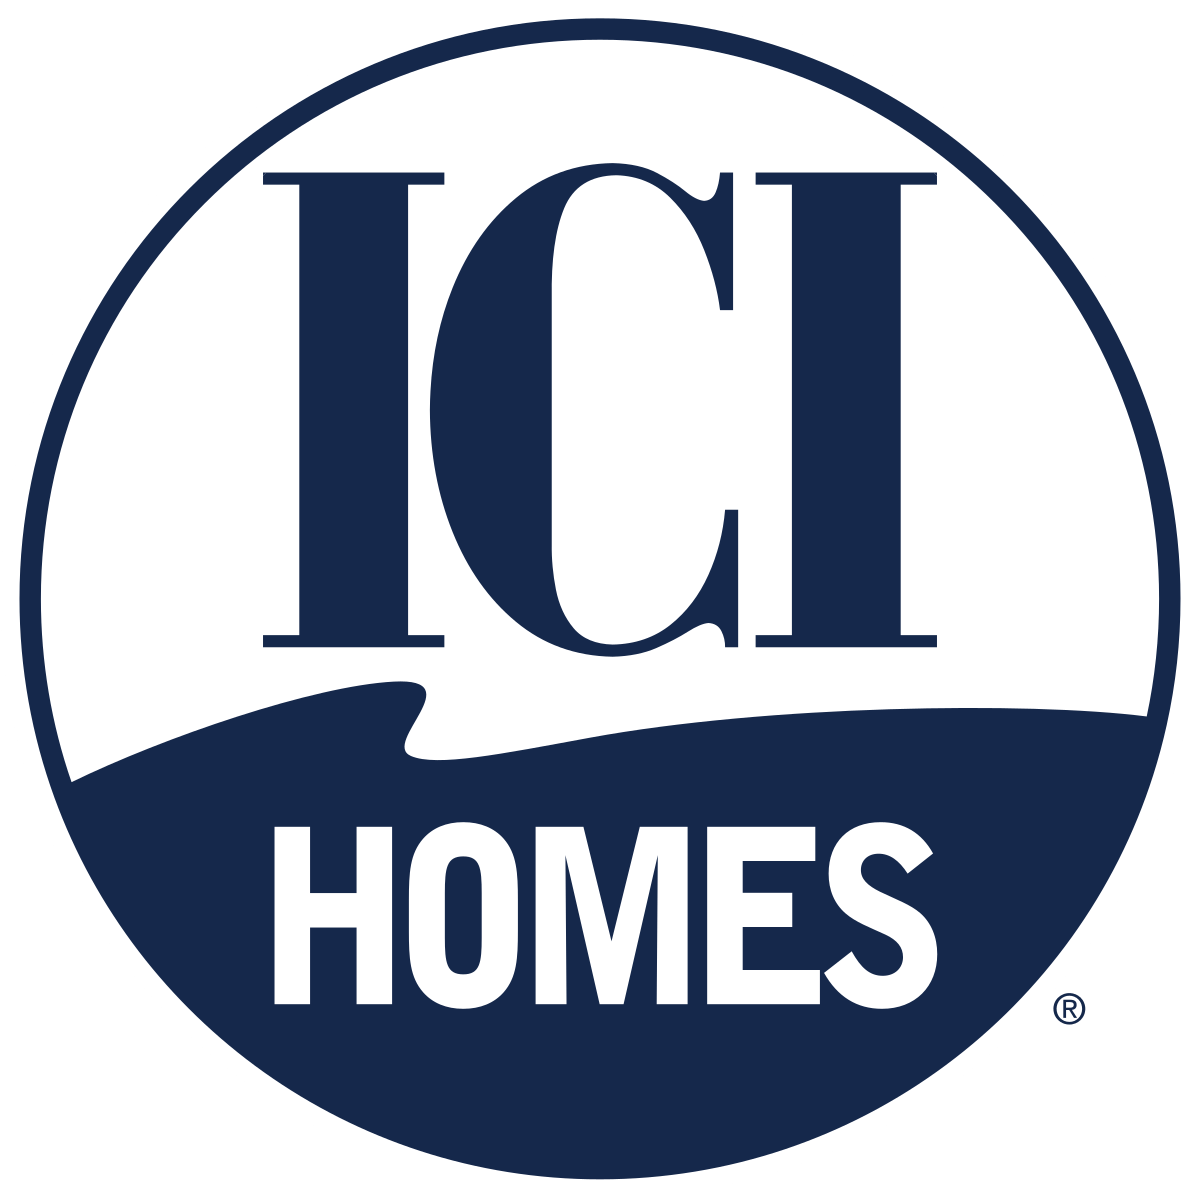 Ici Logo - ICI Homes